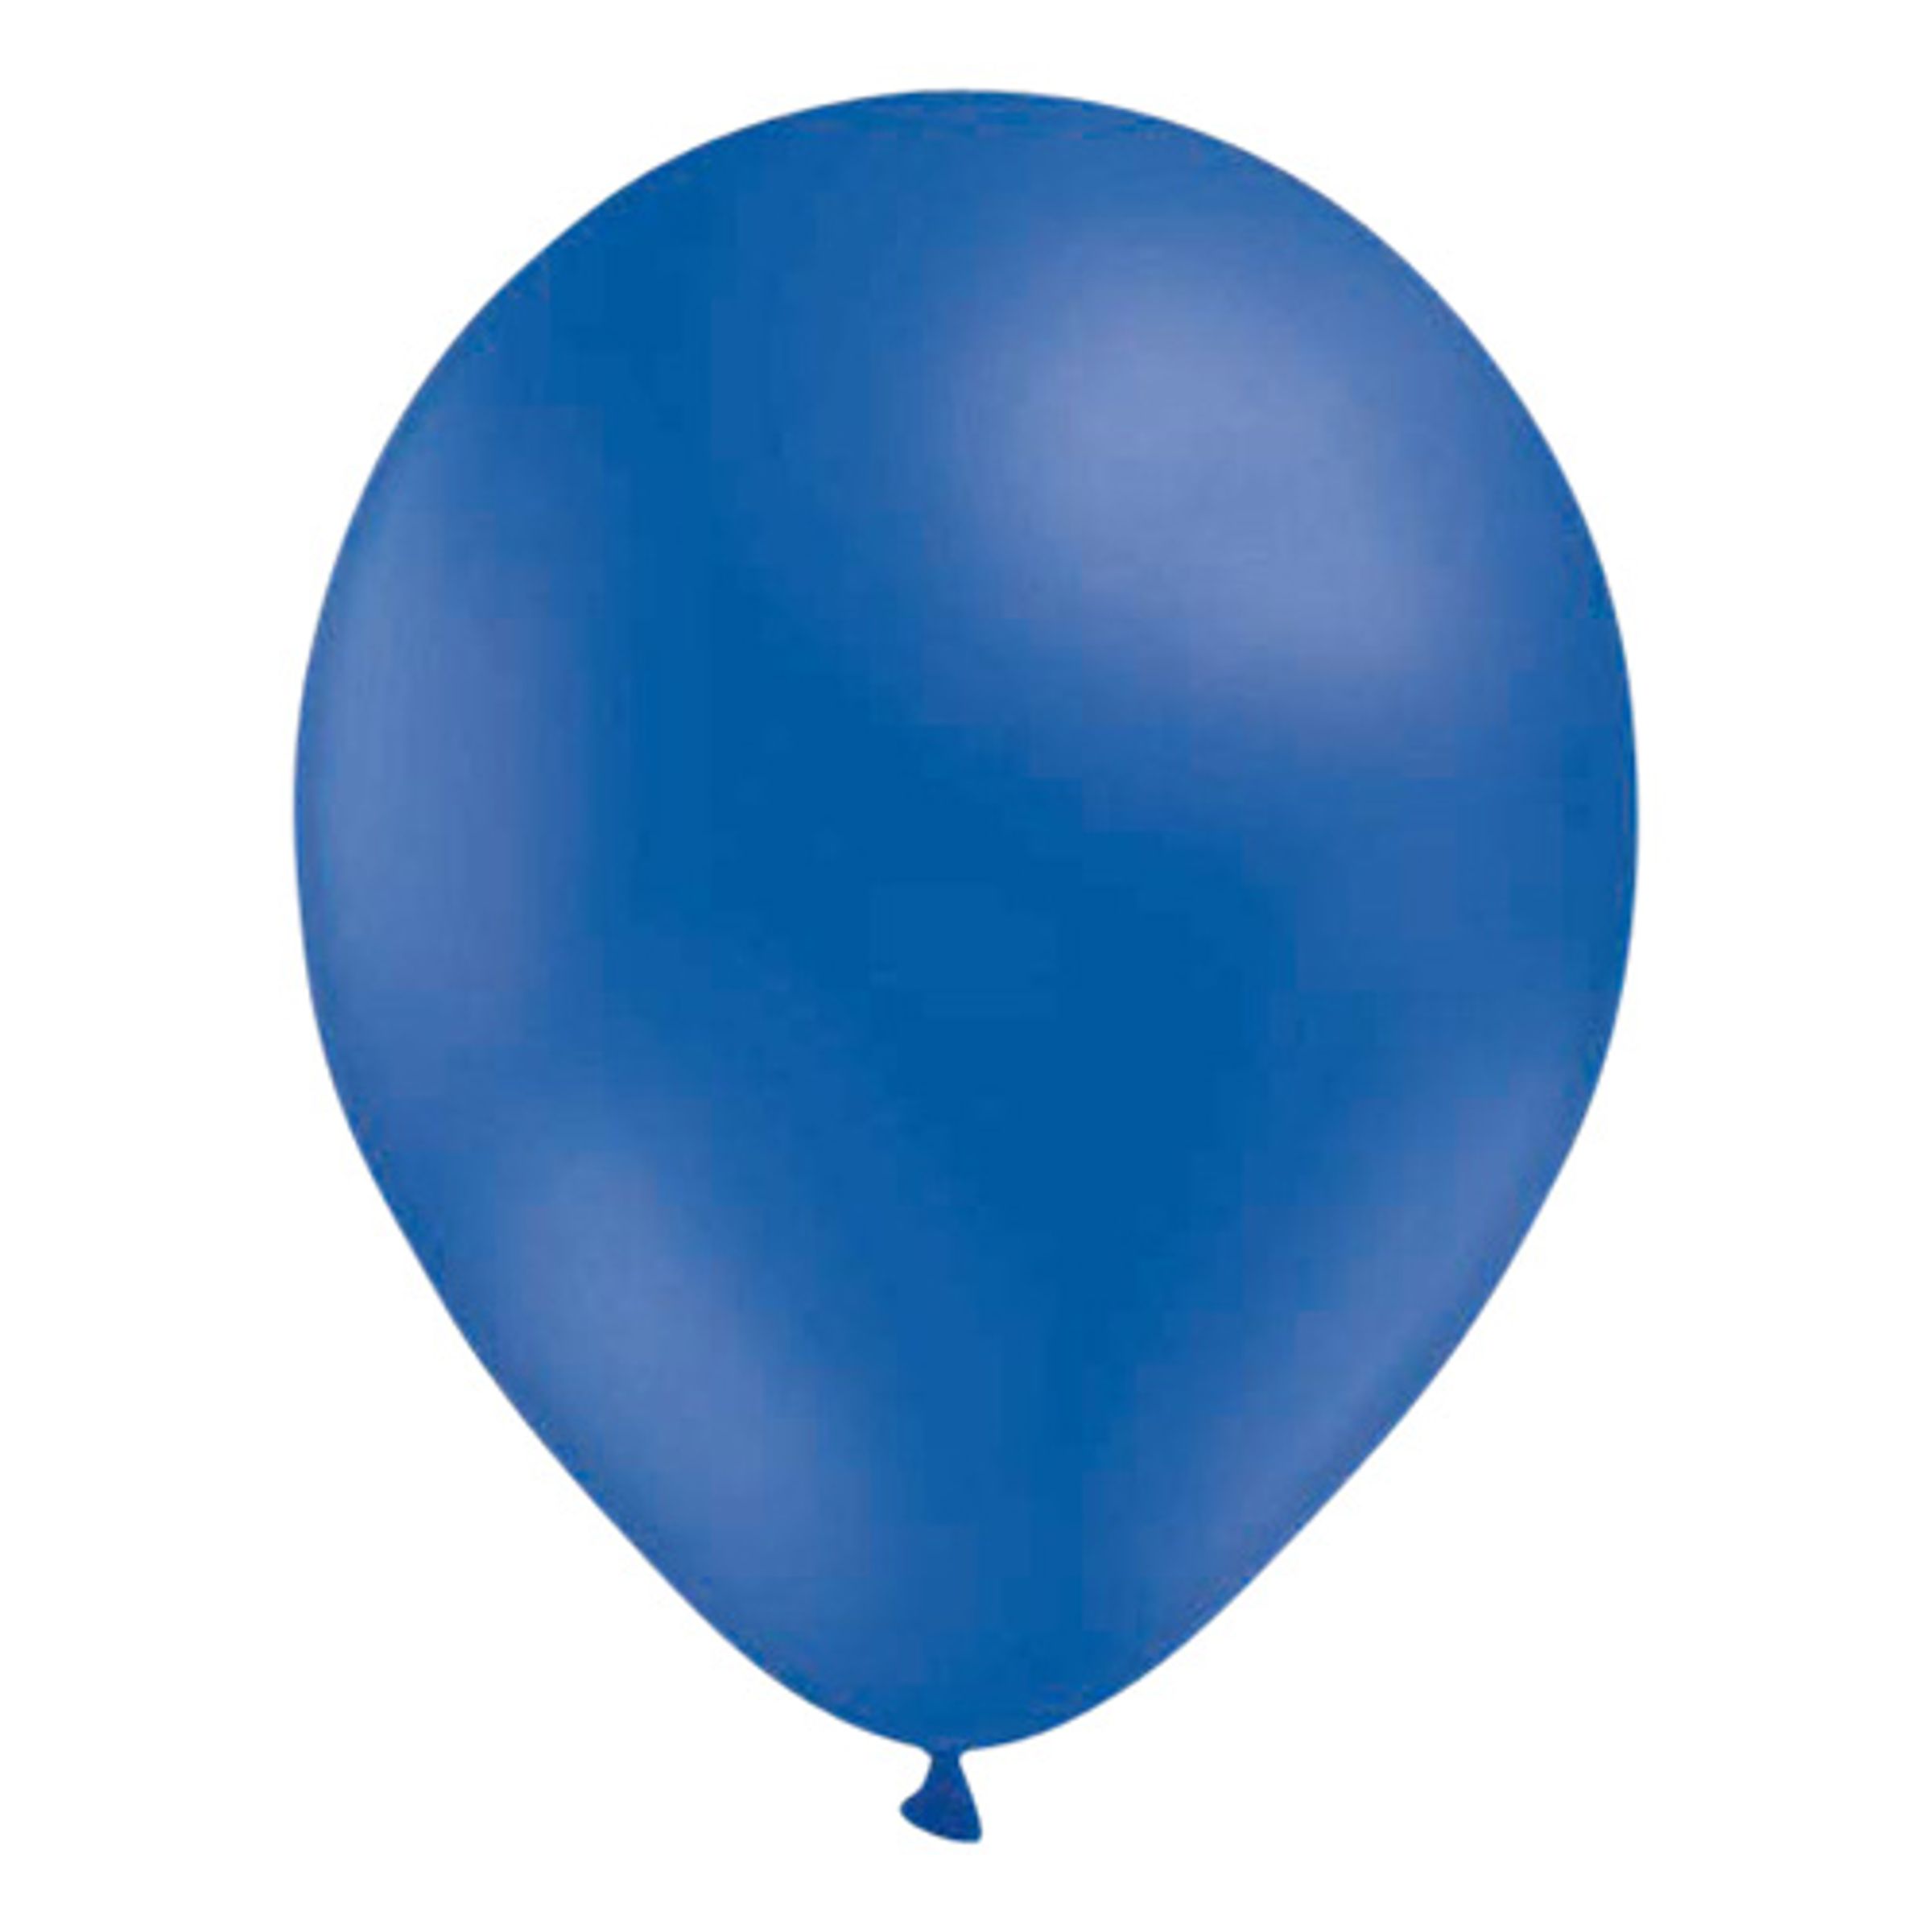 Ballonger Blåa - 10-pack